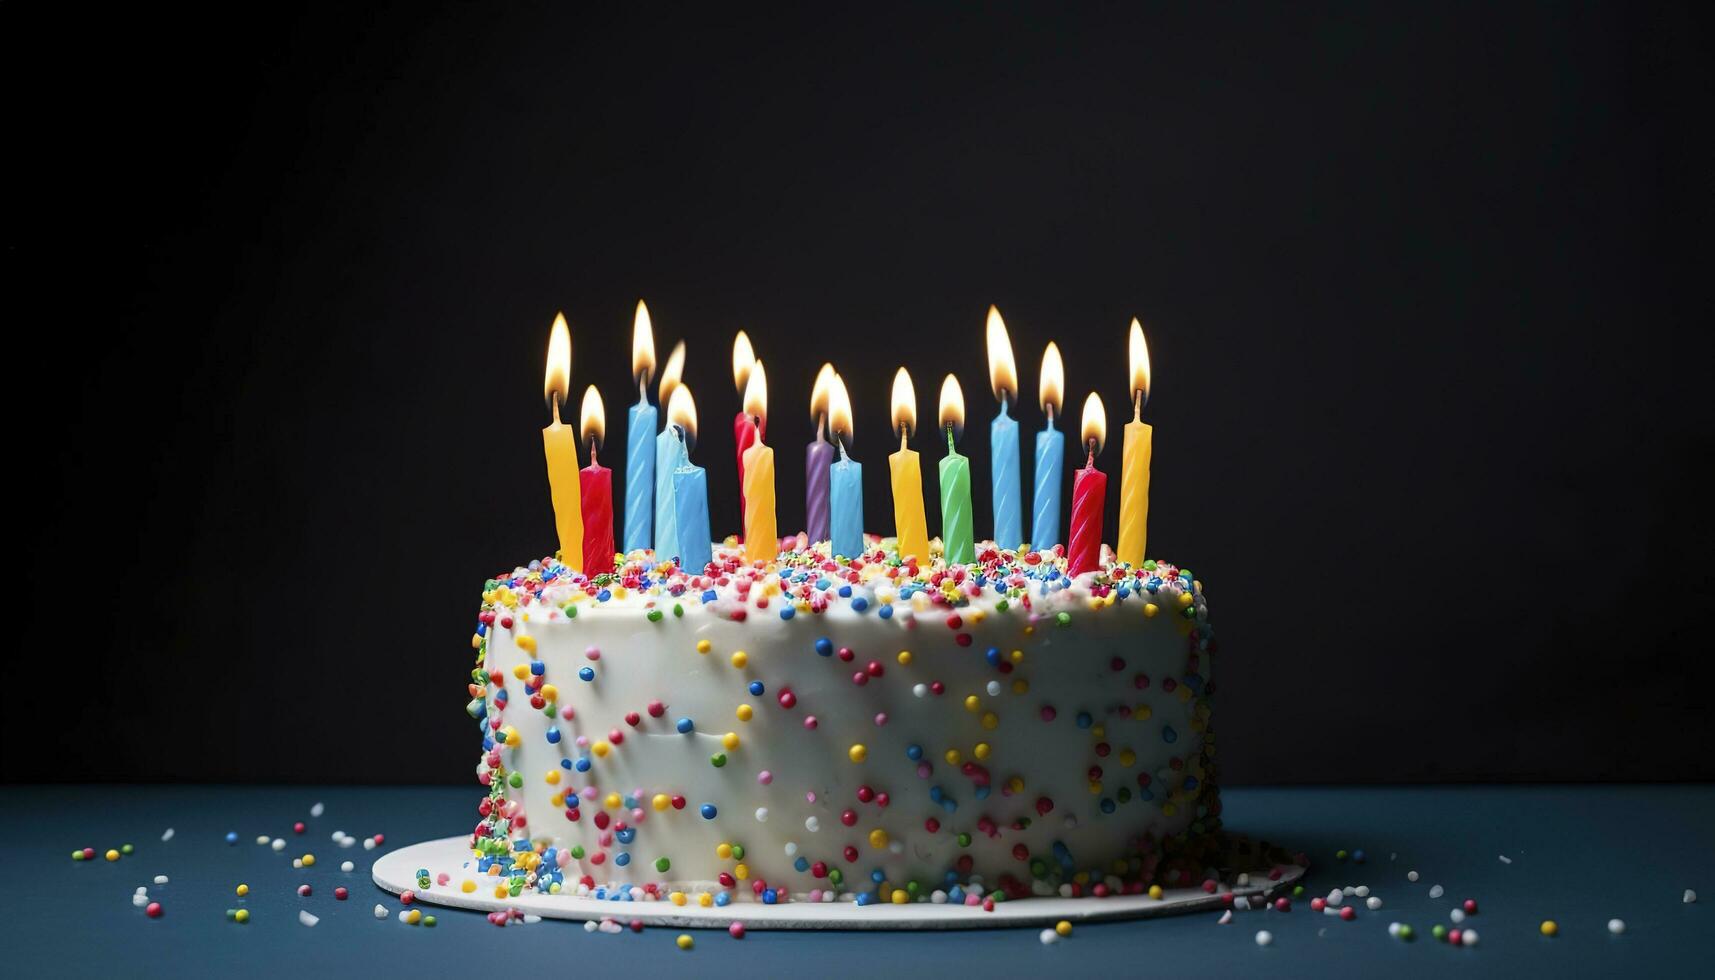 celebração aniversário bolo com vinte 1 colorida aniversário velas, gerar ai foto